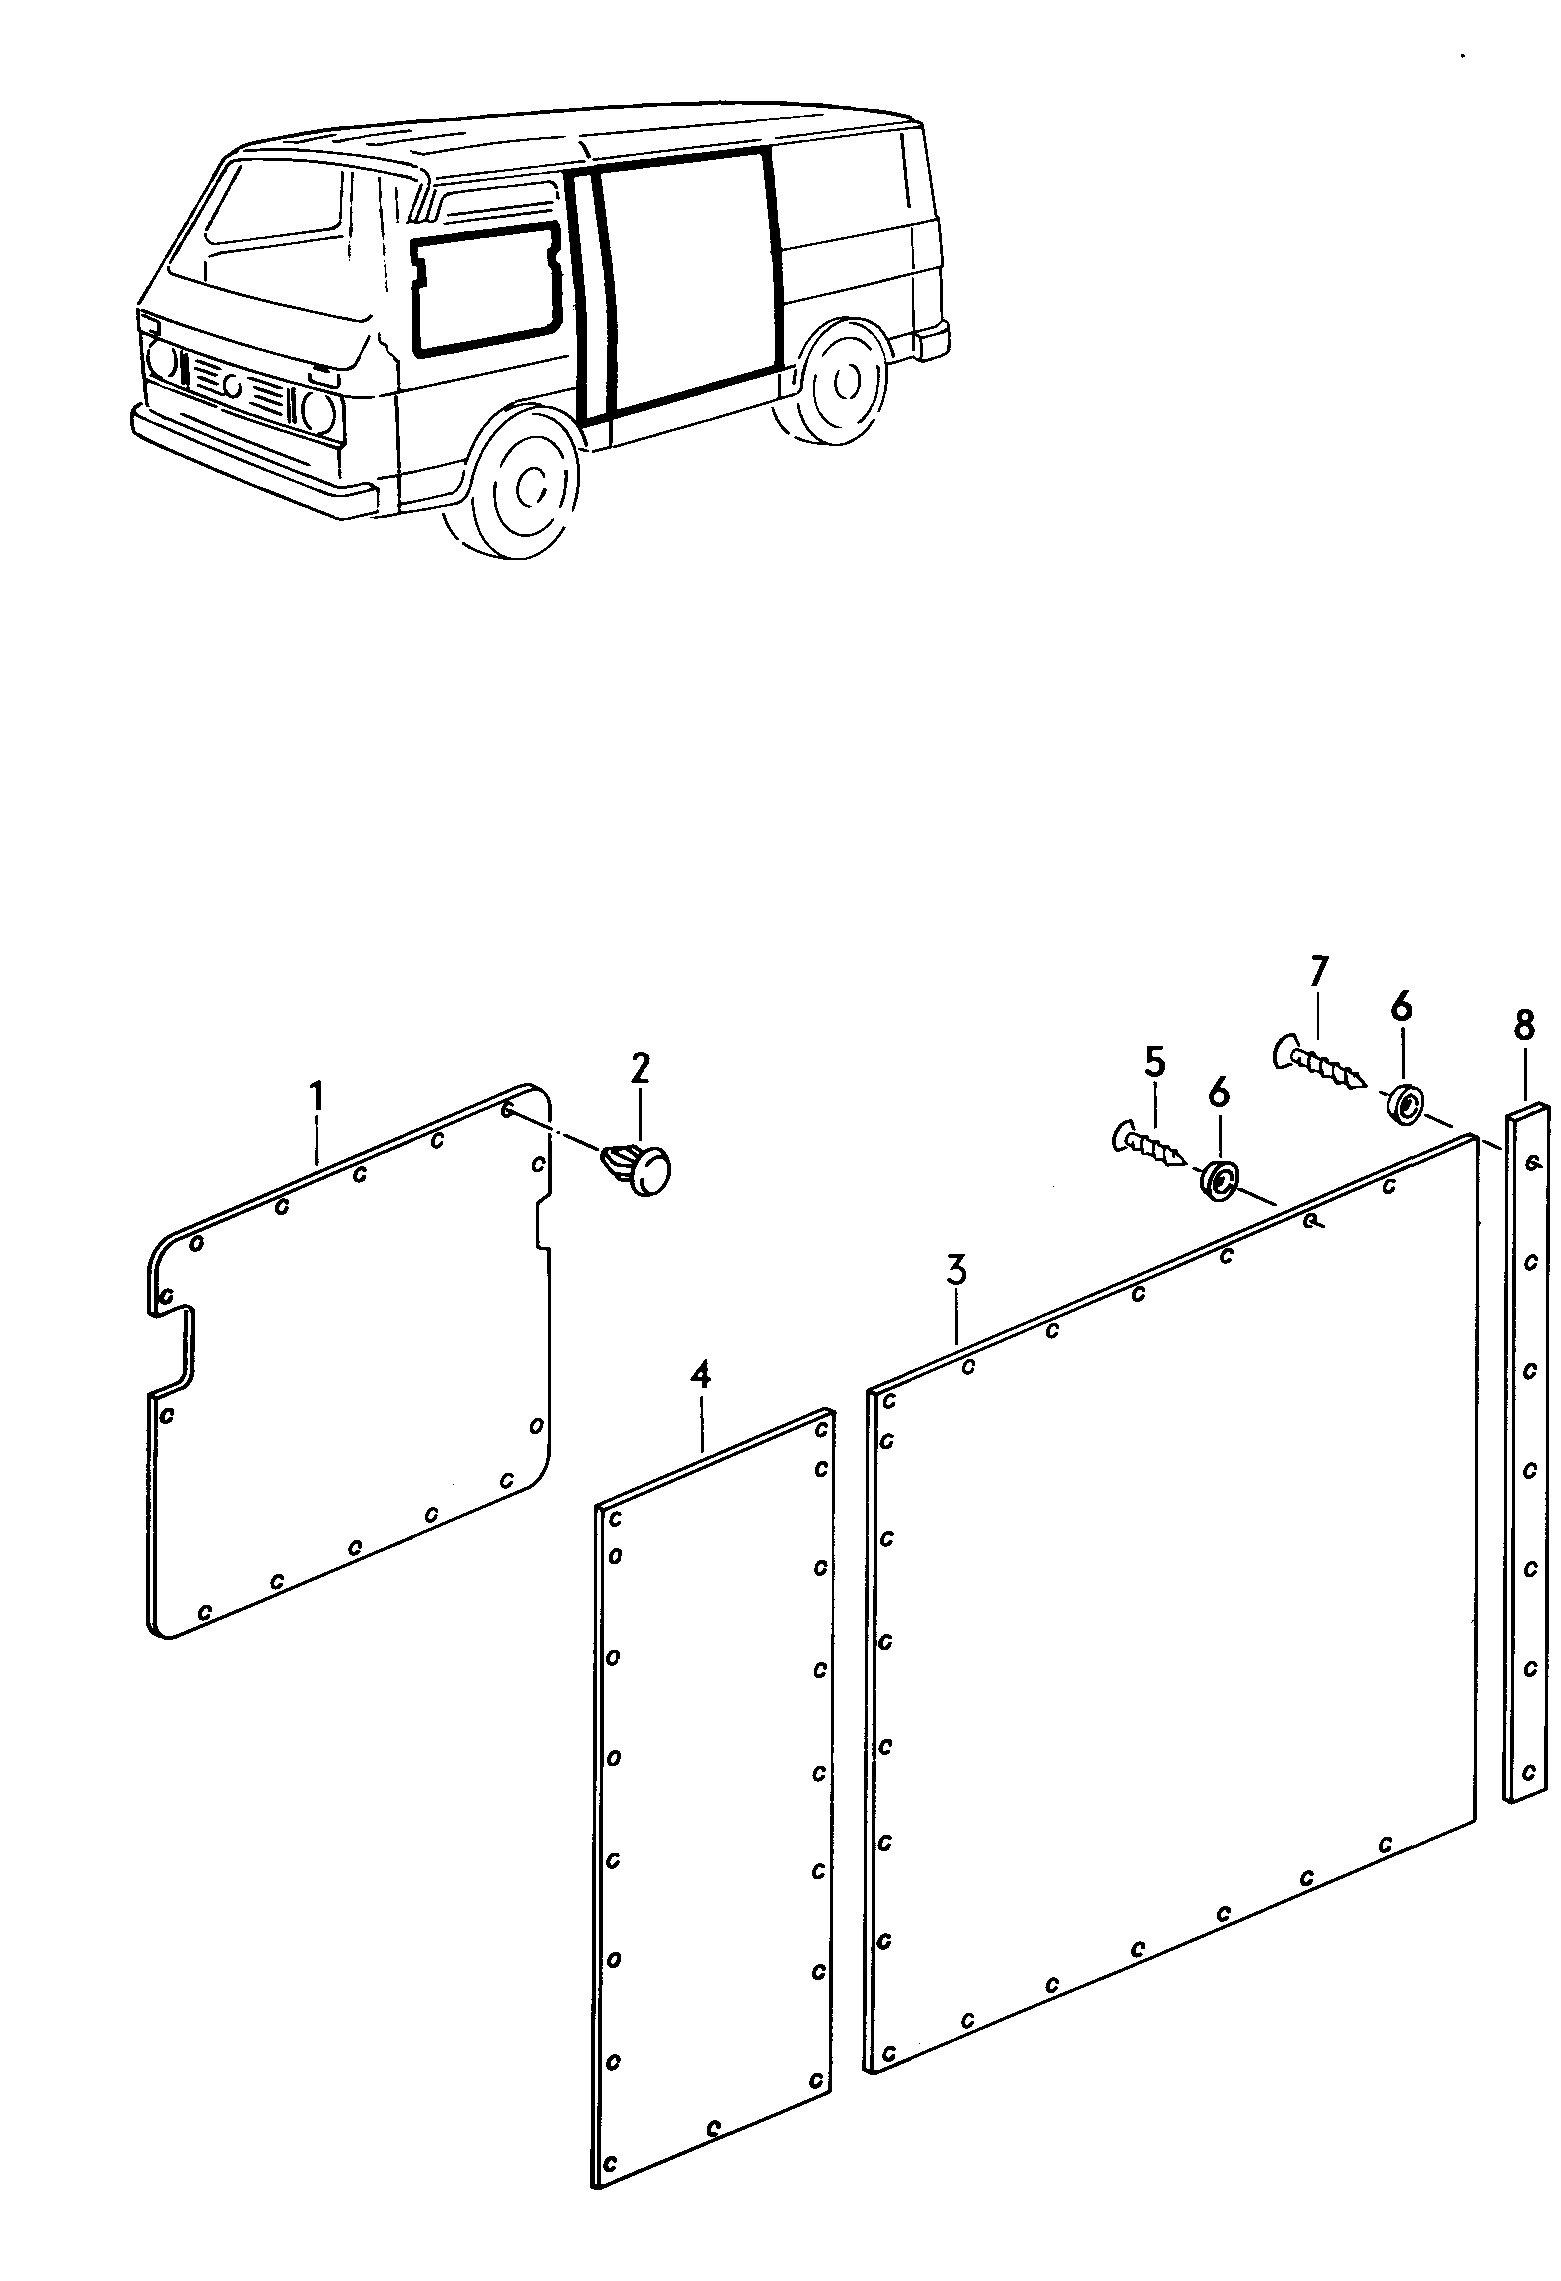 Rivestimento laterale<br>(pannello in masonite) ant.furgonegiardinetta - LT, LT 4x4 - lt